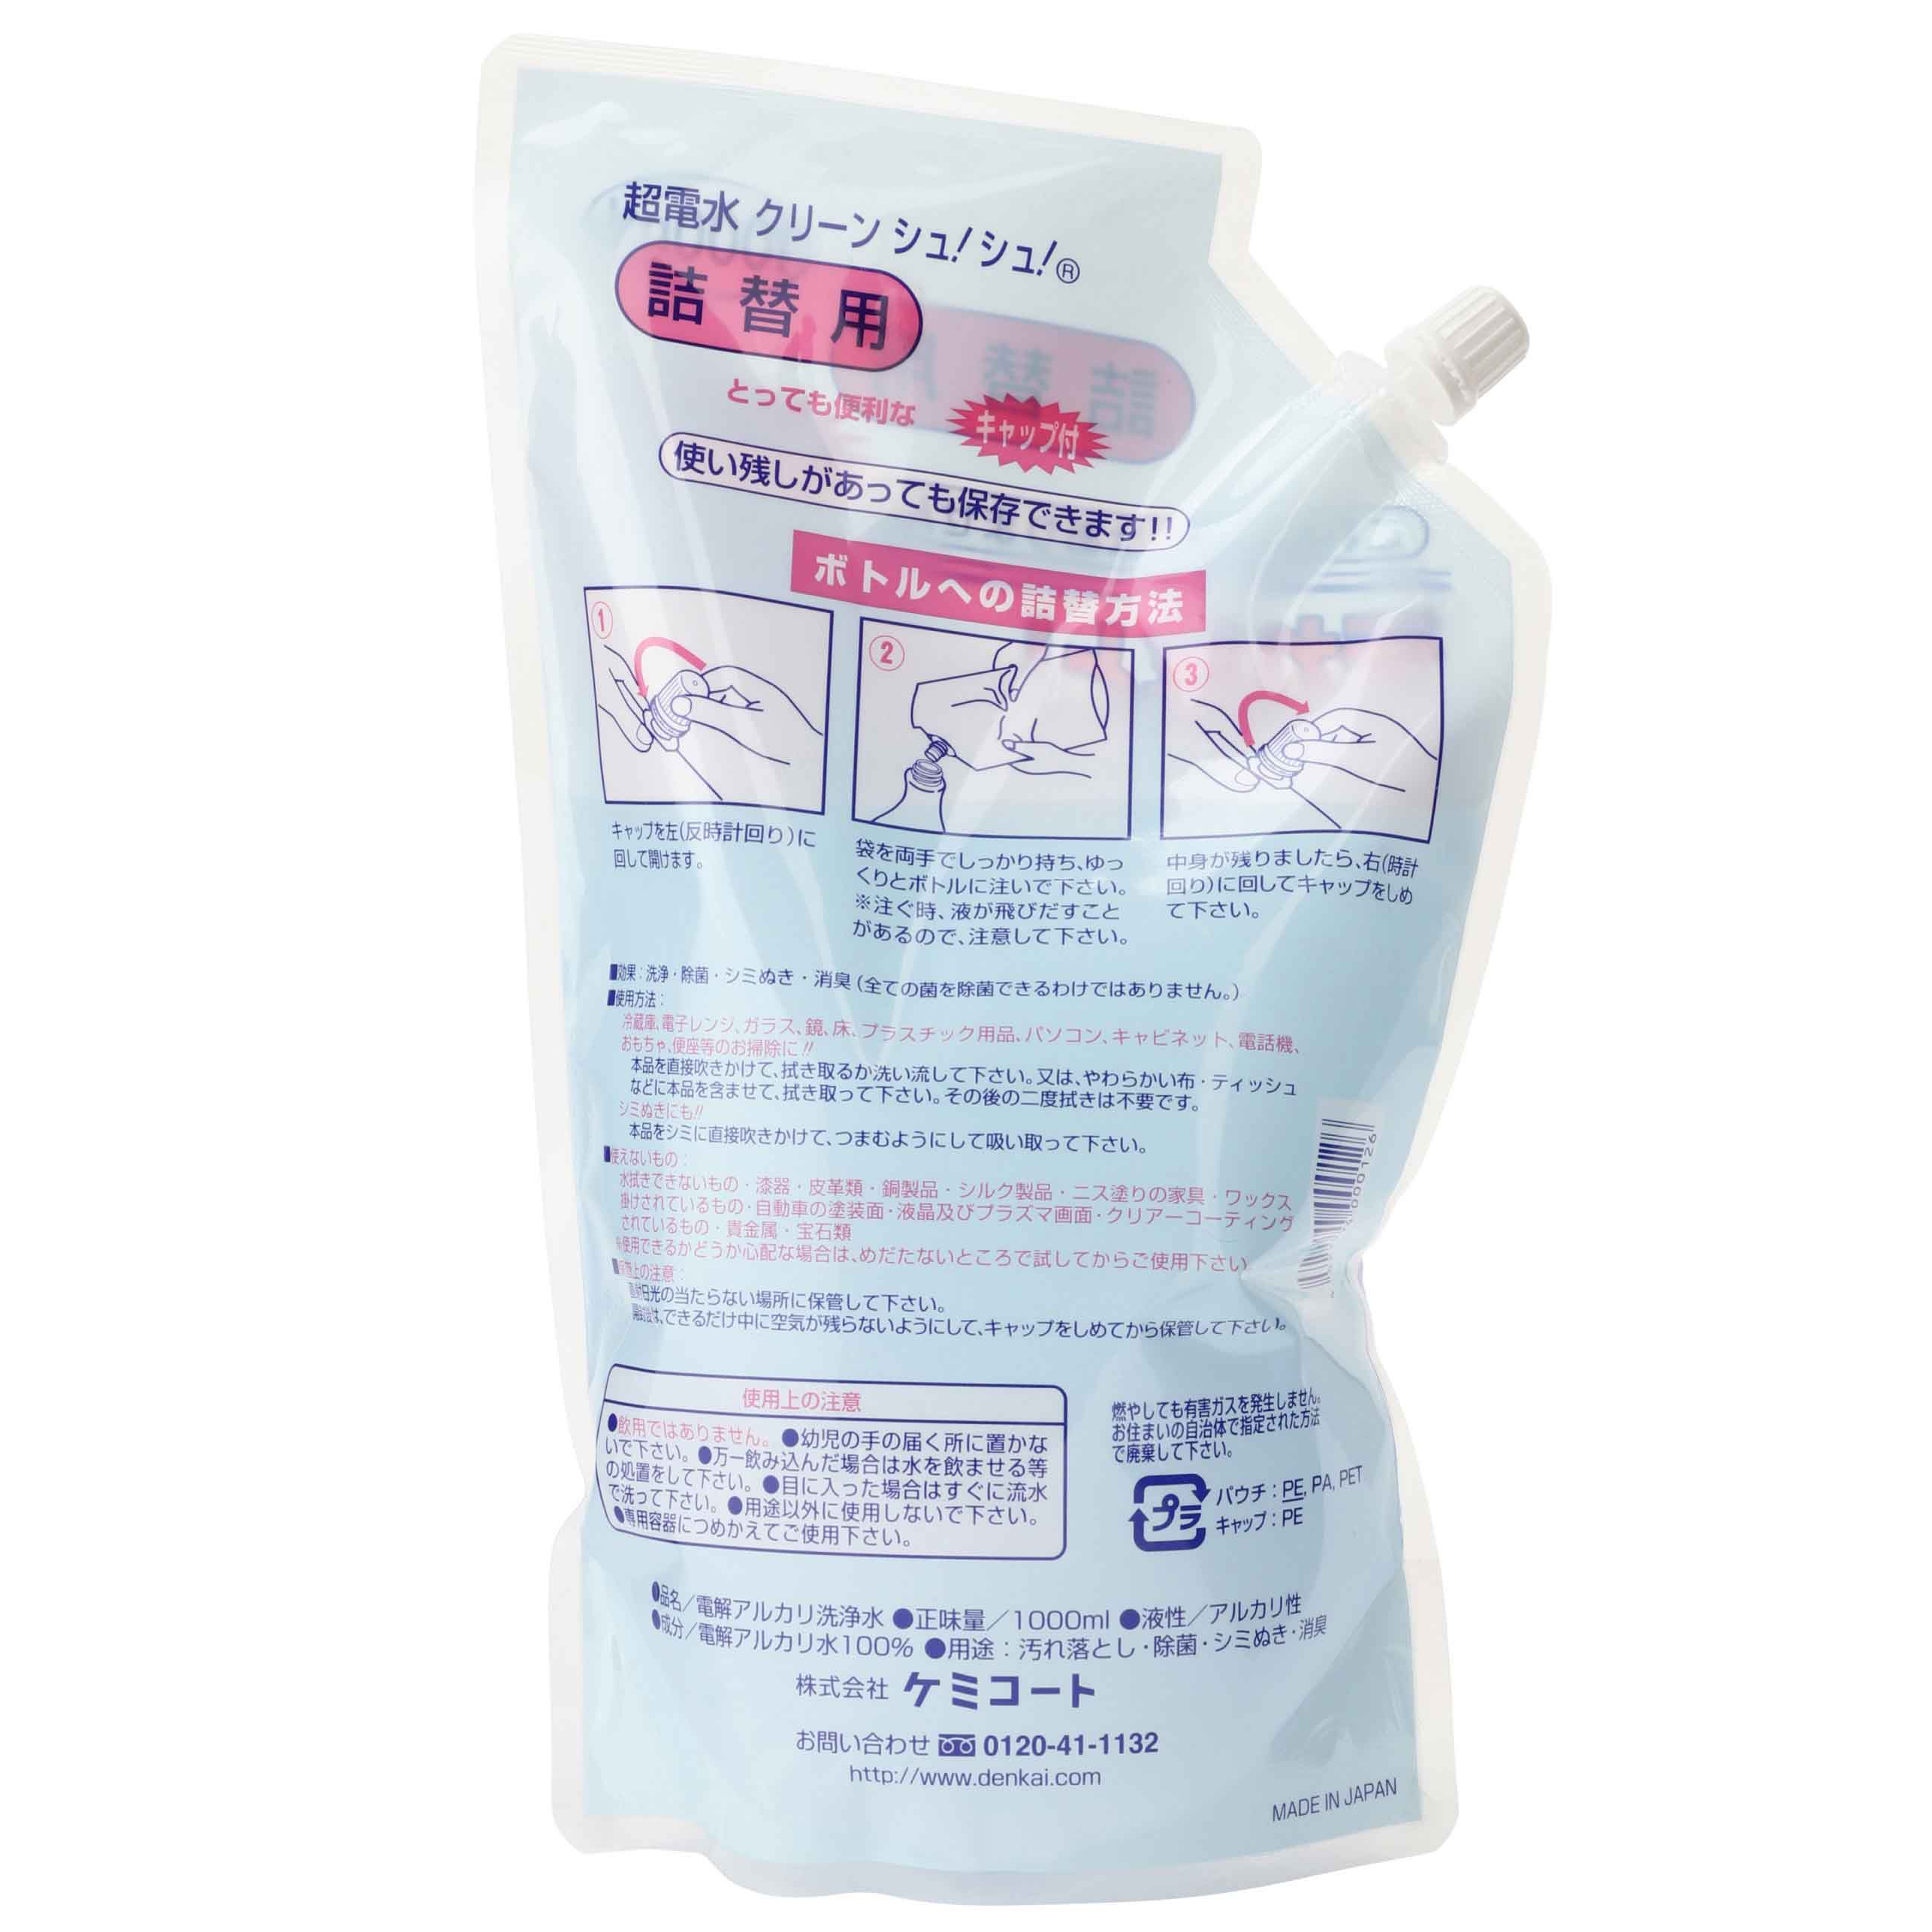 Nước diệt khuẩn ion kiềm CLEAN SHU! SHU! Túi tiết kiệm 1000mL Làm sạch - Diệt khuẩn - Khử mùi bề mặt đồ gia dụng, nội thất ô tô từ Nhật Bản